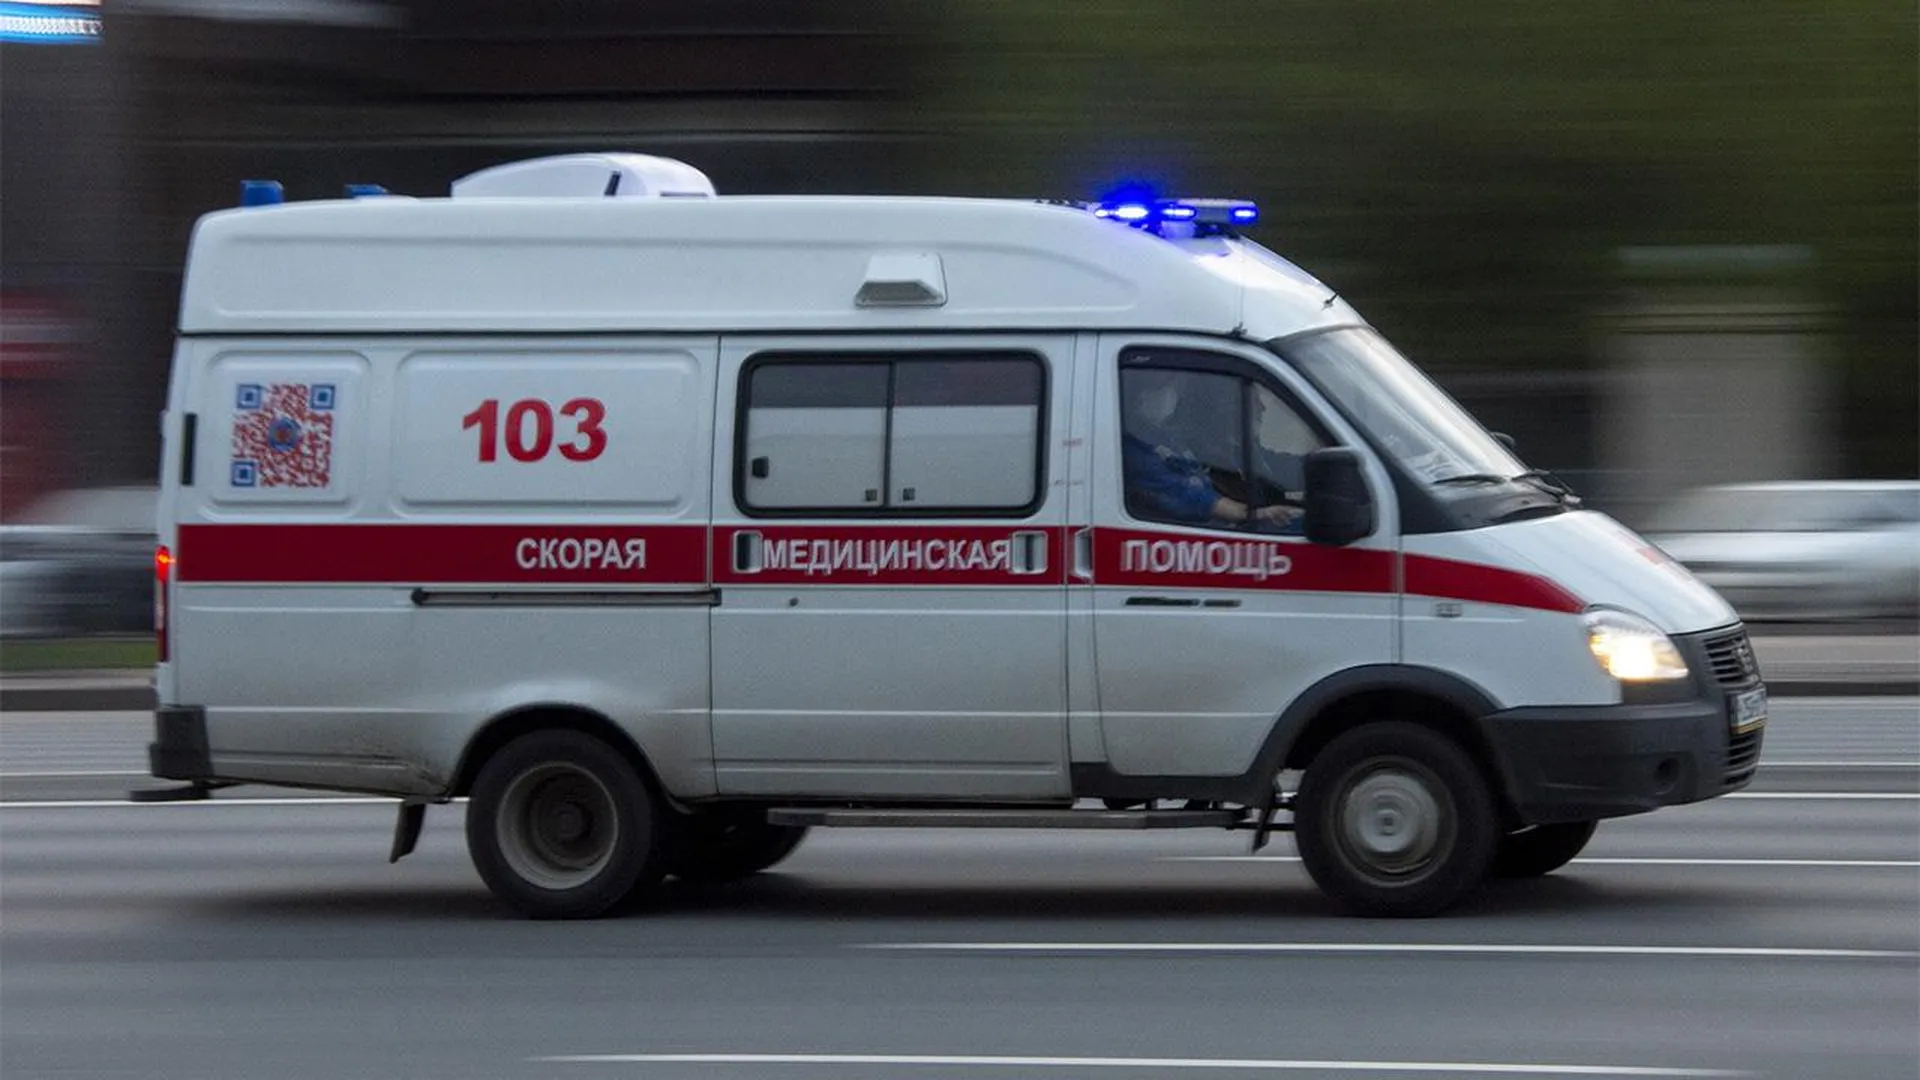 «Опасным маньяком вырастет»: россиян шокировал пьяный подросток, у которого нашли дробь в голове